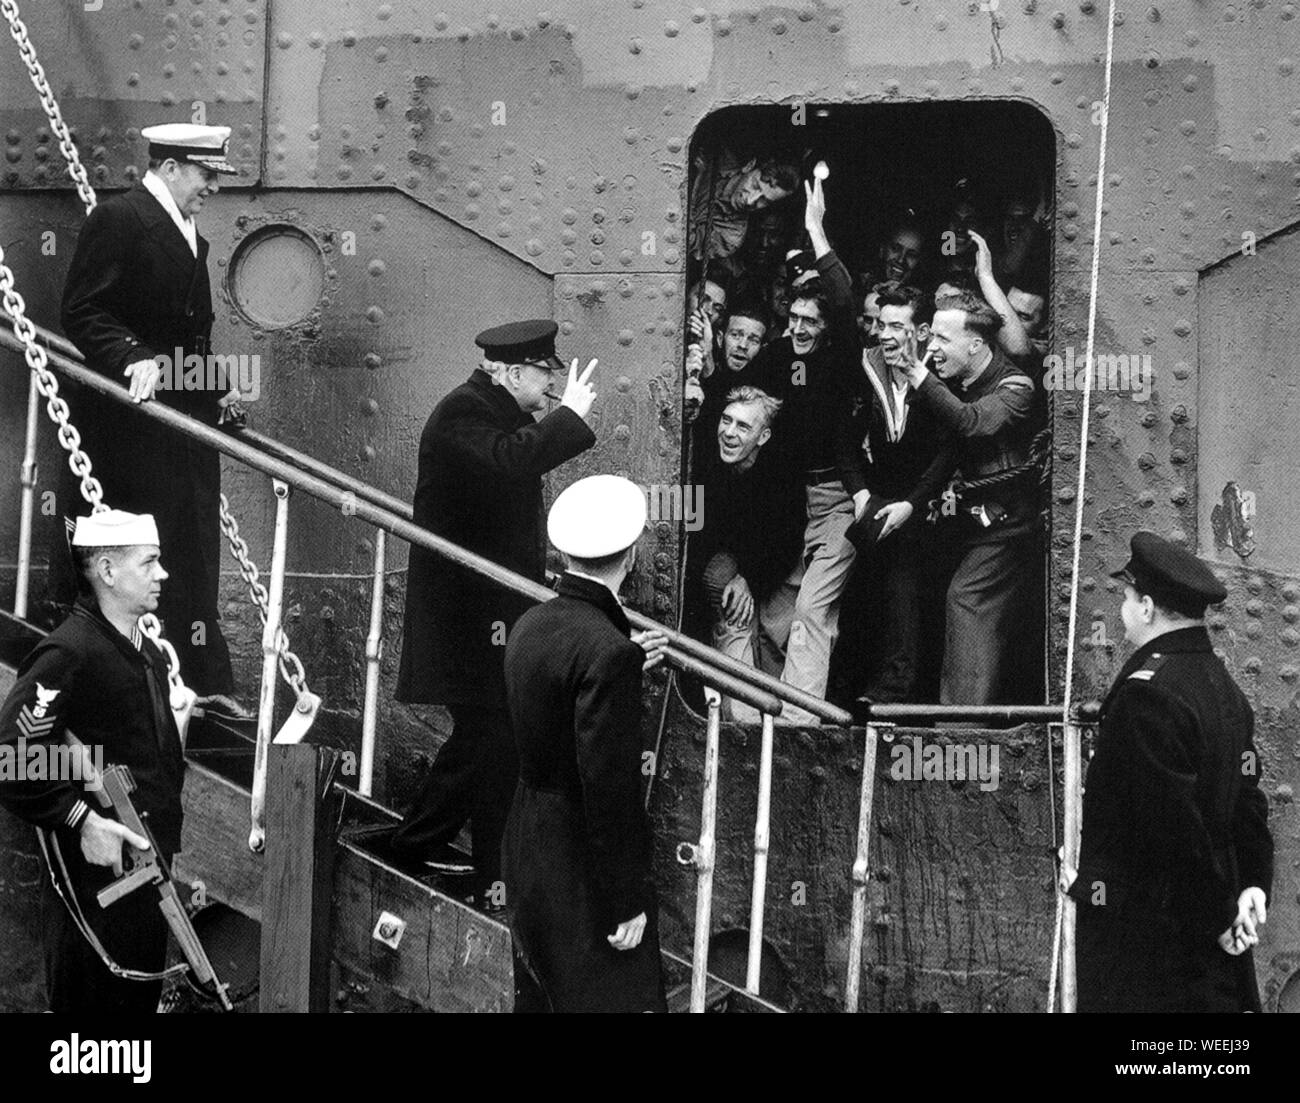 Winston Churchill arrivant aux États-Unis par bateau et étant acclamé par les marins alliés et les aviateurs qui ont également fait la traversée. Mai 1943 Banque D'Images